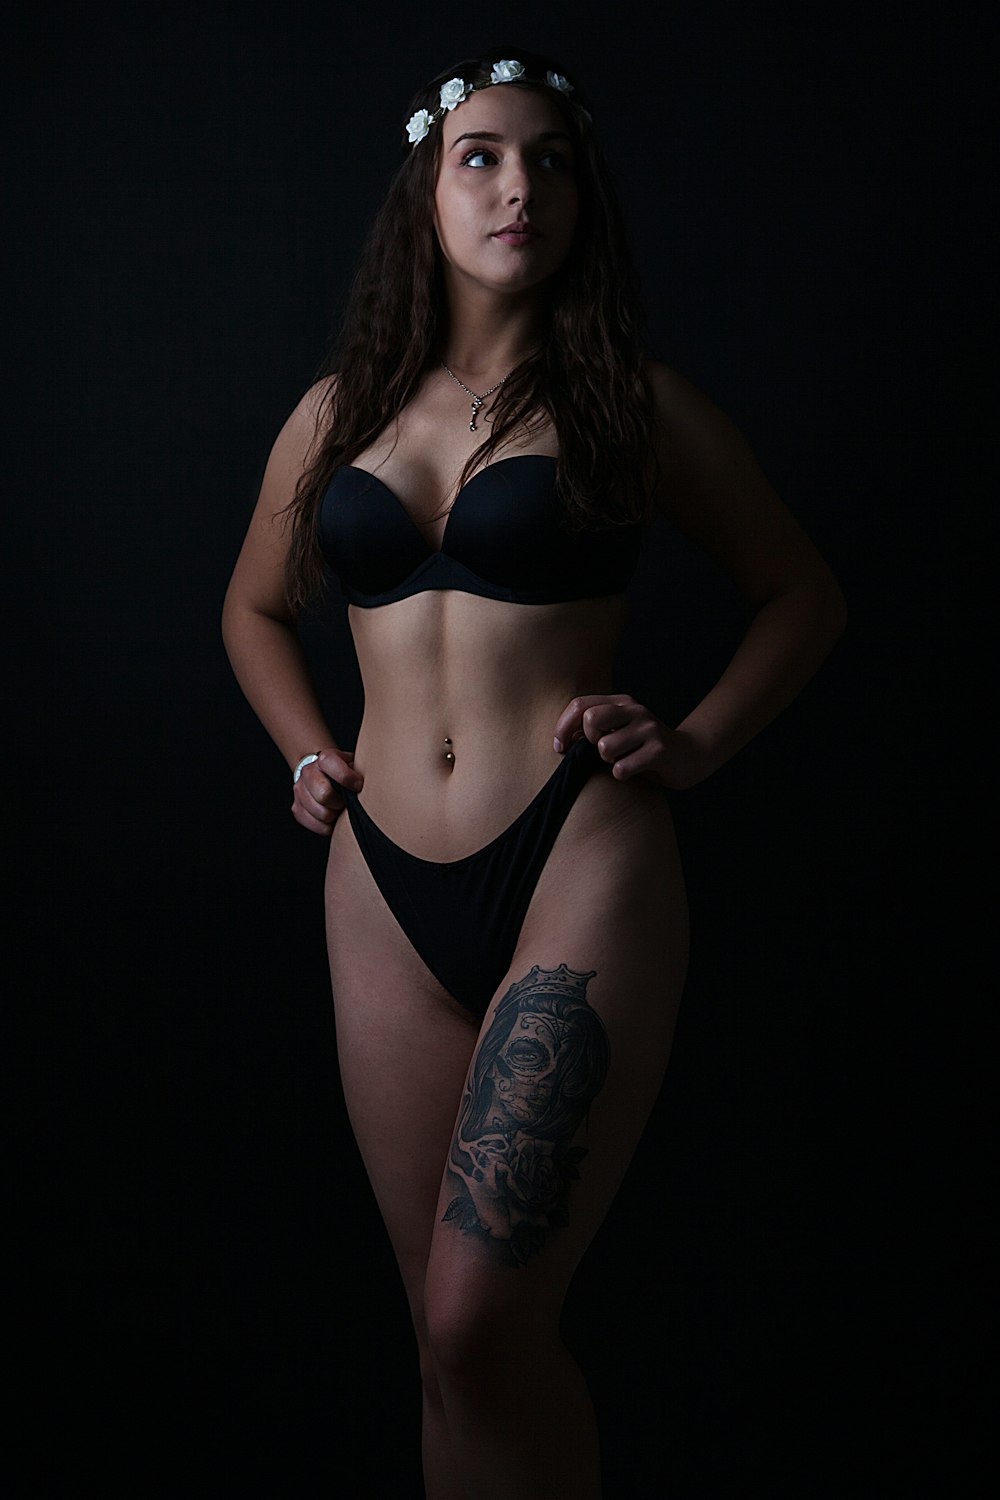 woman in black bikini with tattoo on her back